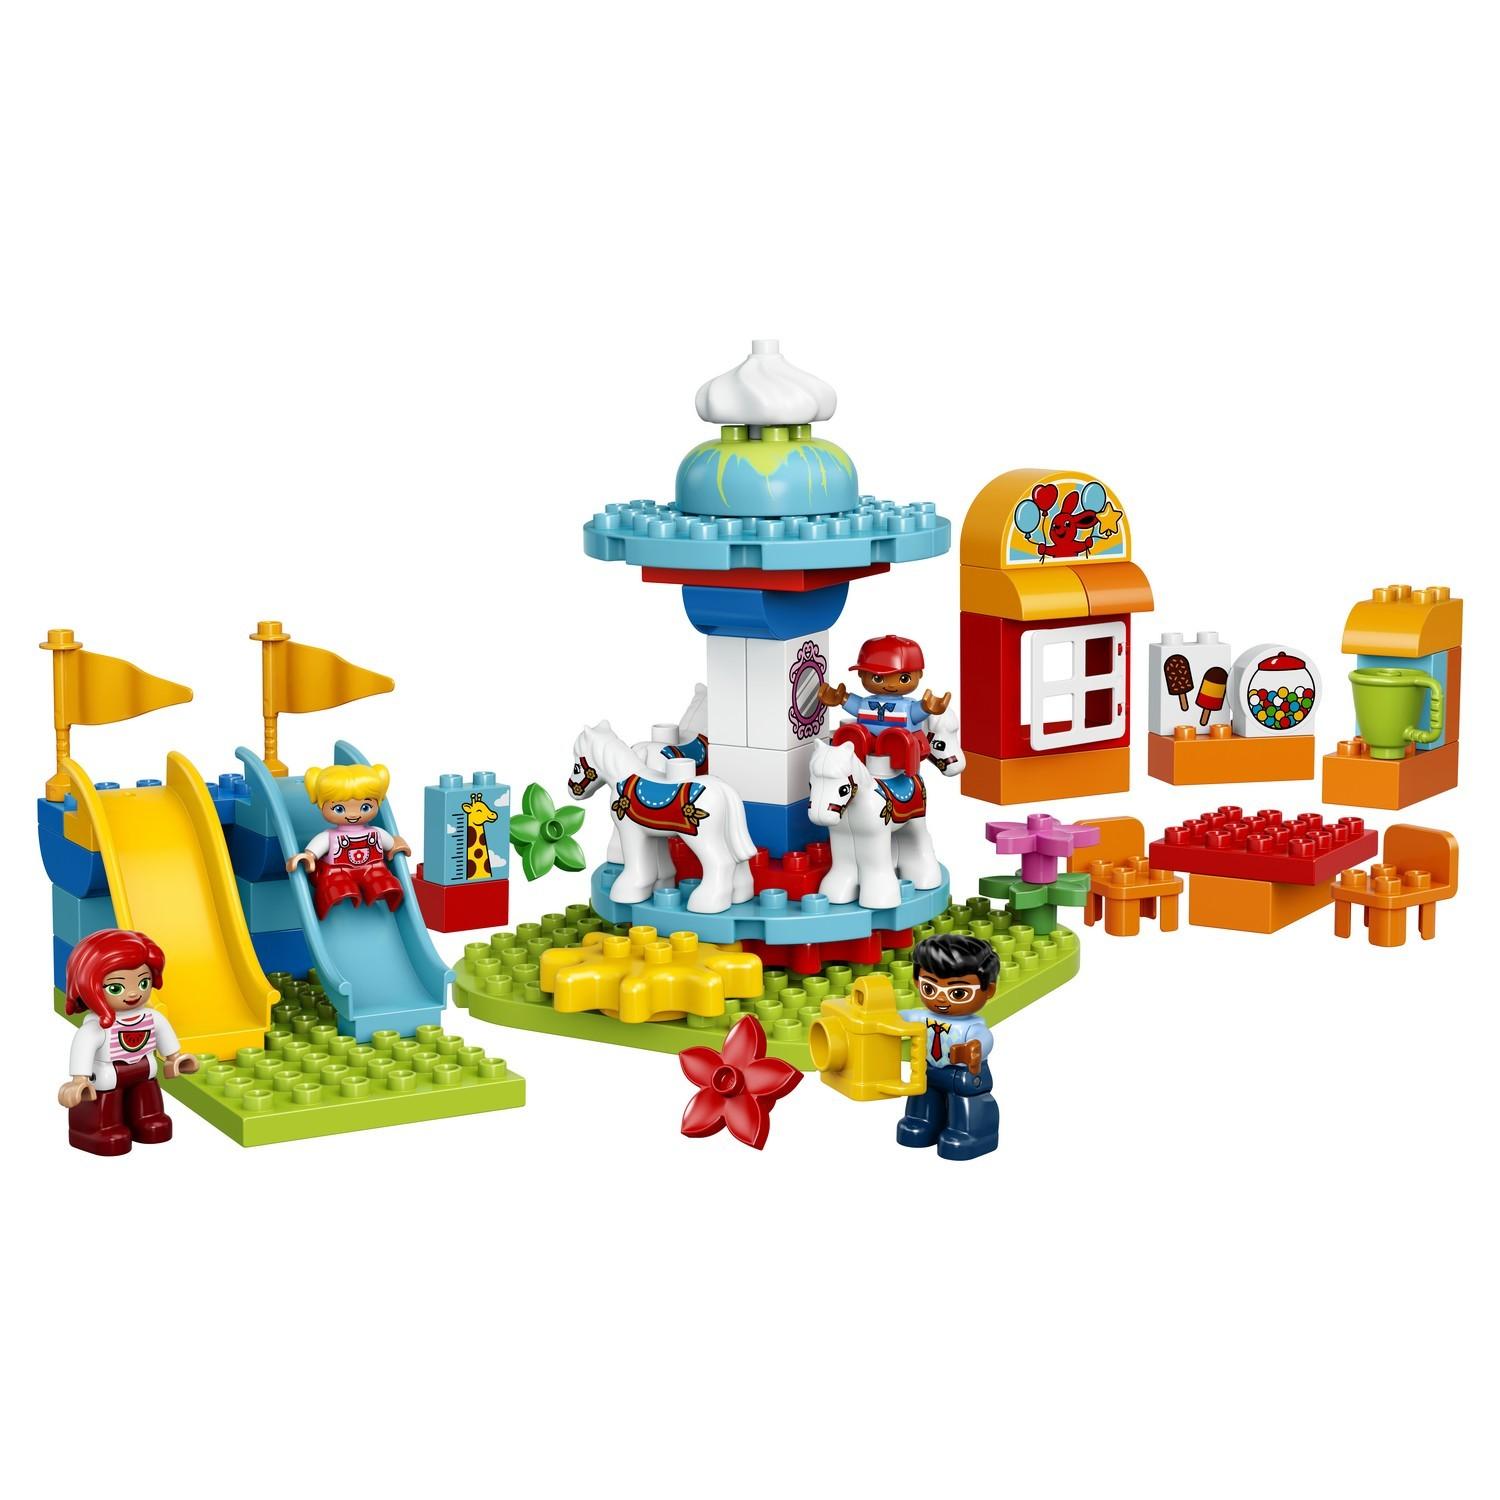 Lego Duplo 10841 Семейный парк аттракционов